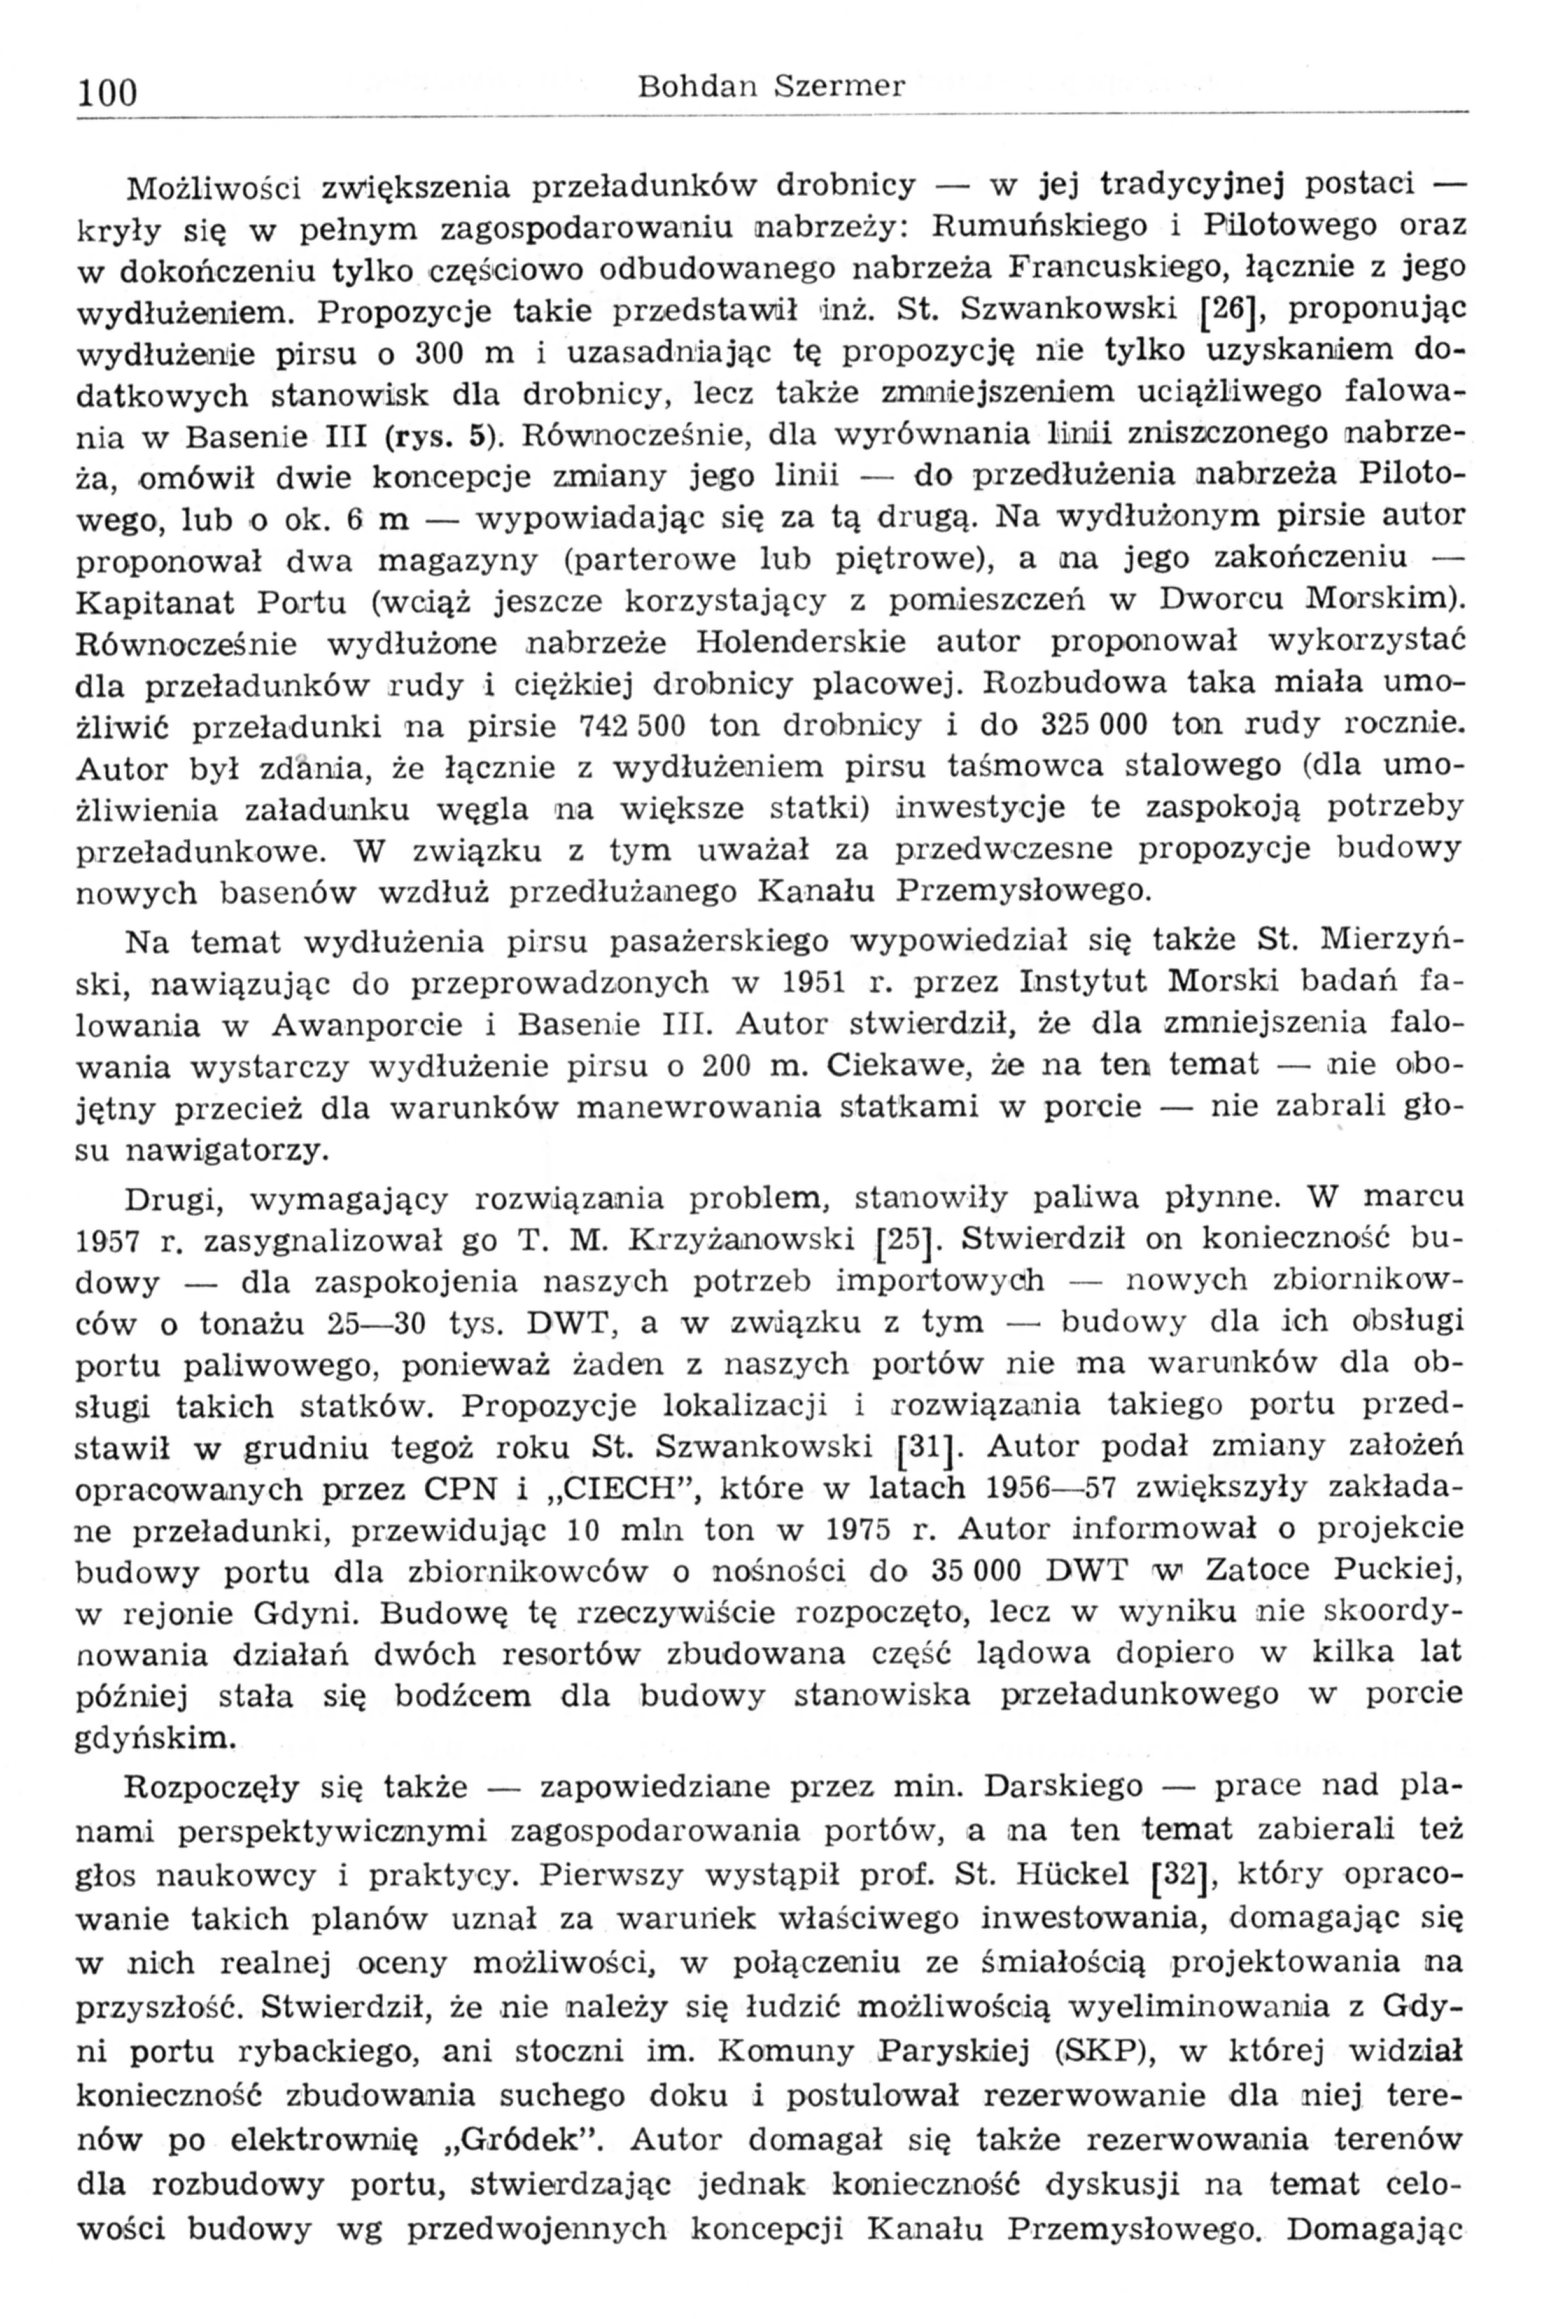 Koncepcje i struktura przestrzenna portu gdyńskiego - zarys przemian (część 2: 1939-1965)